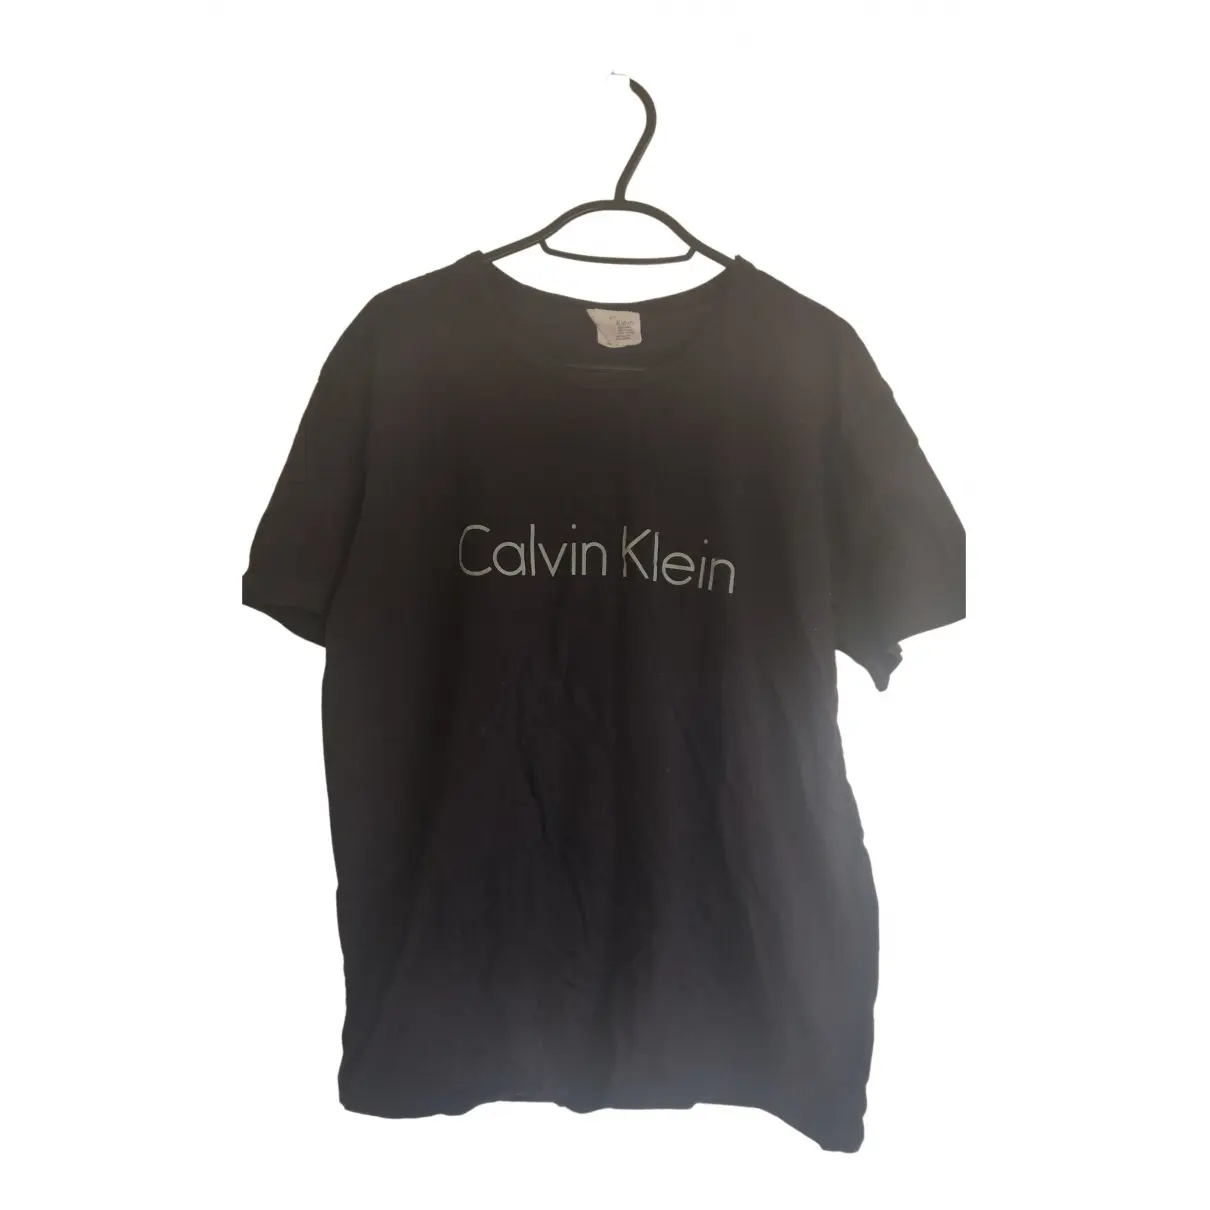 Black Cotton Top Calvin Klein